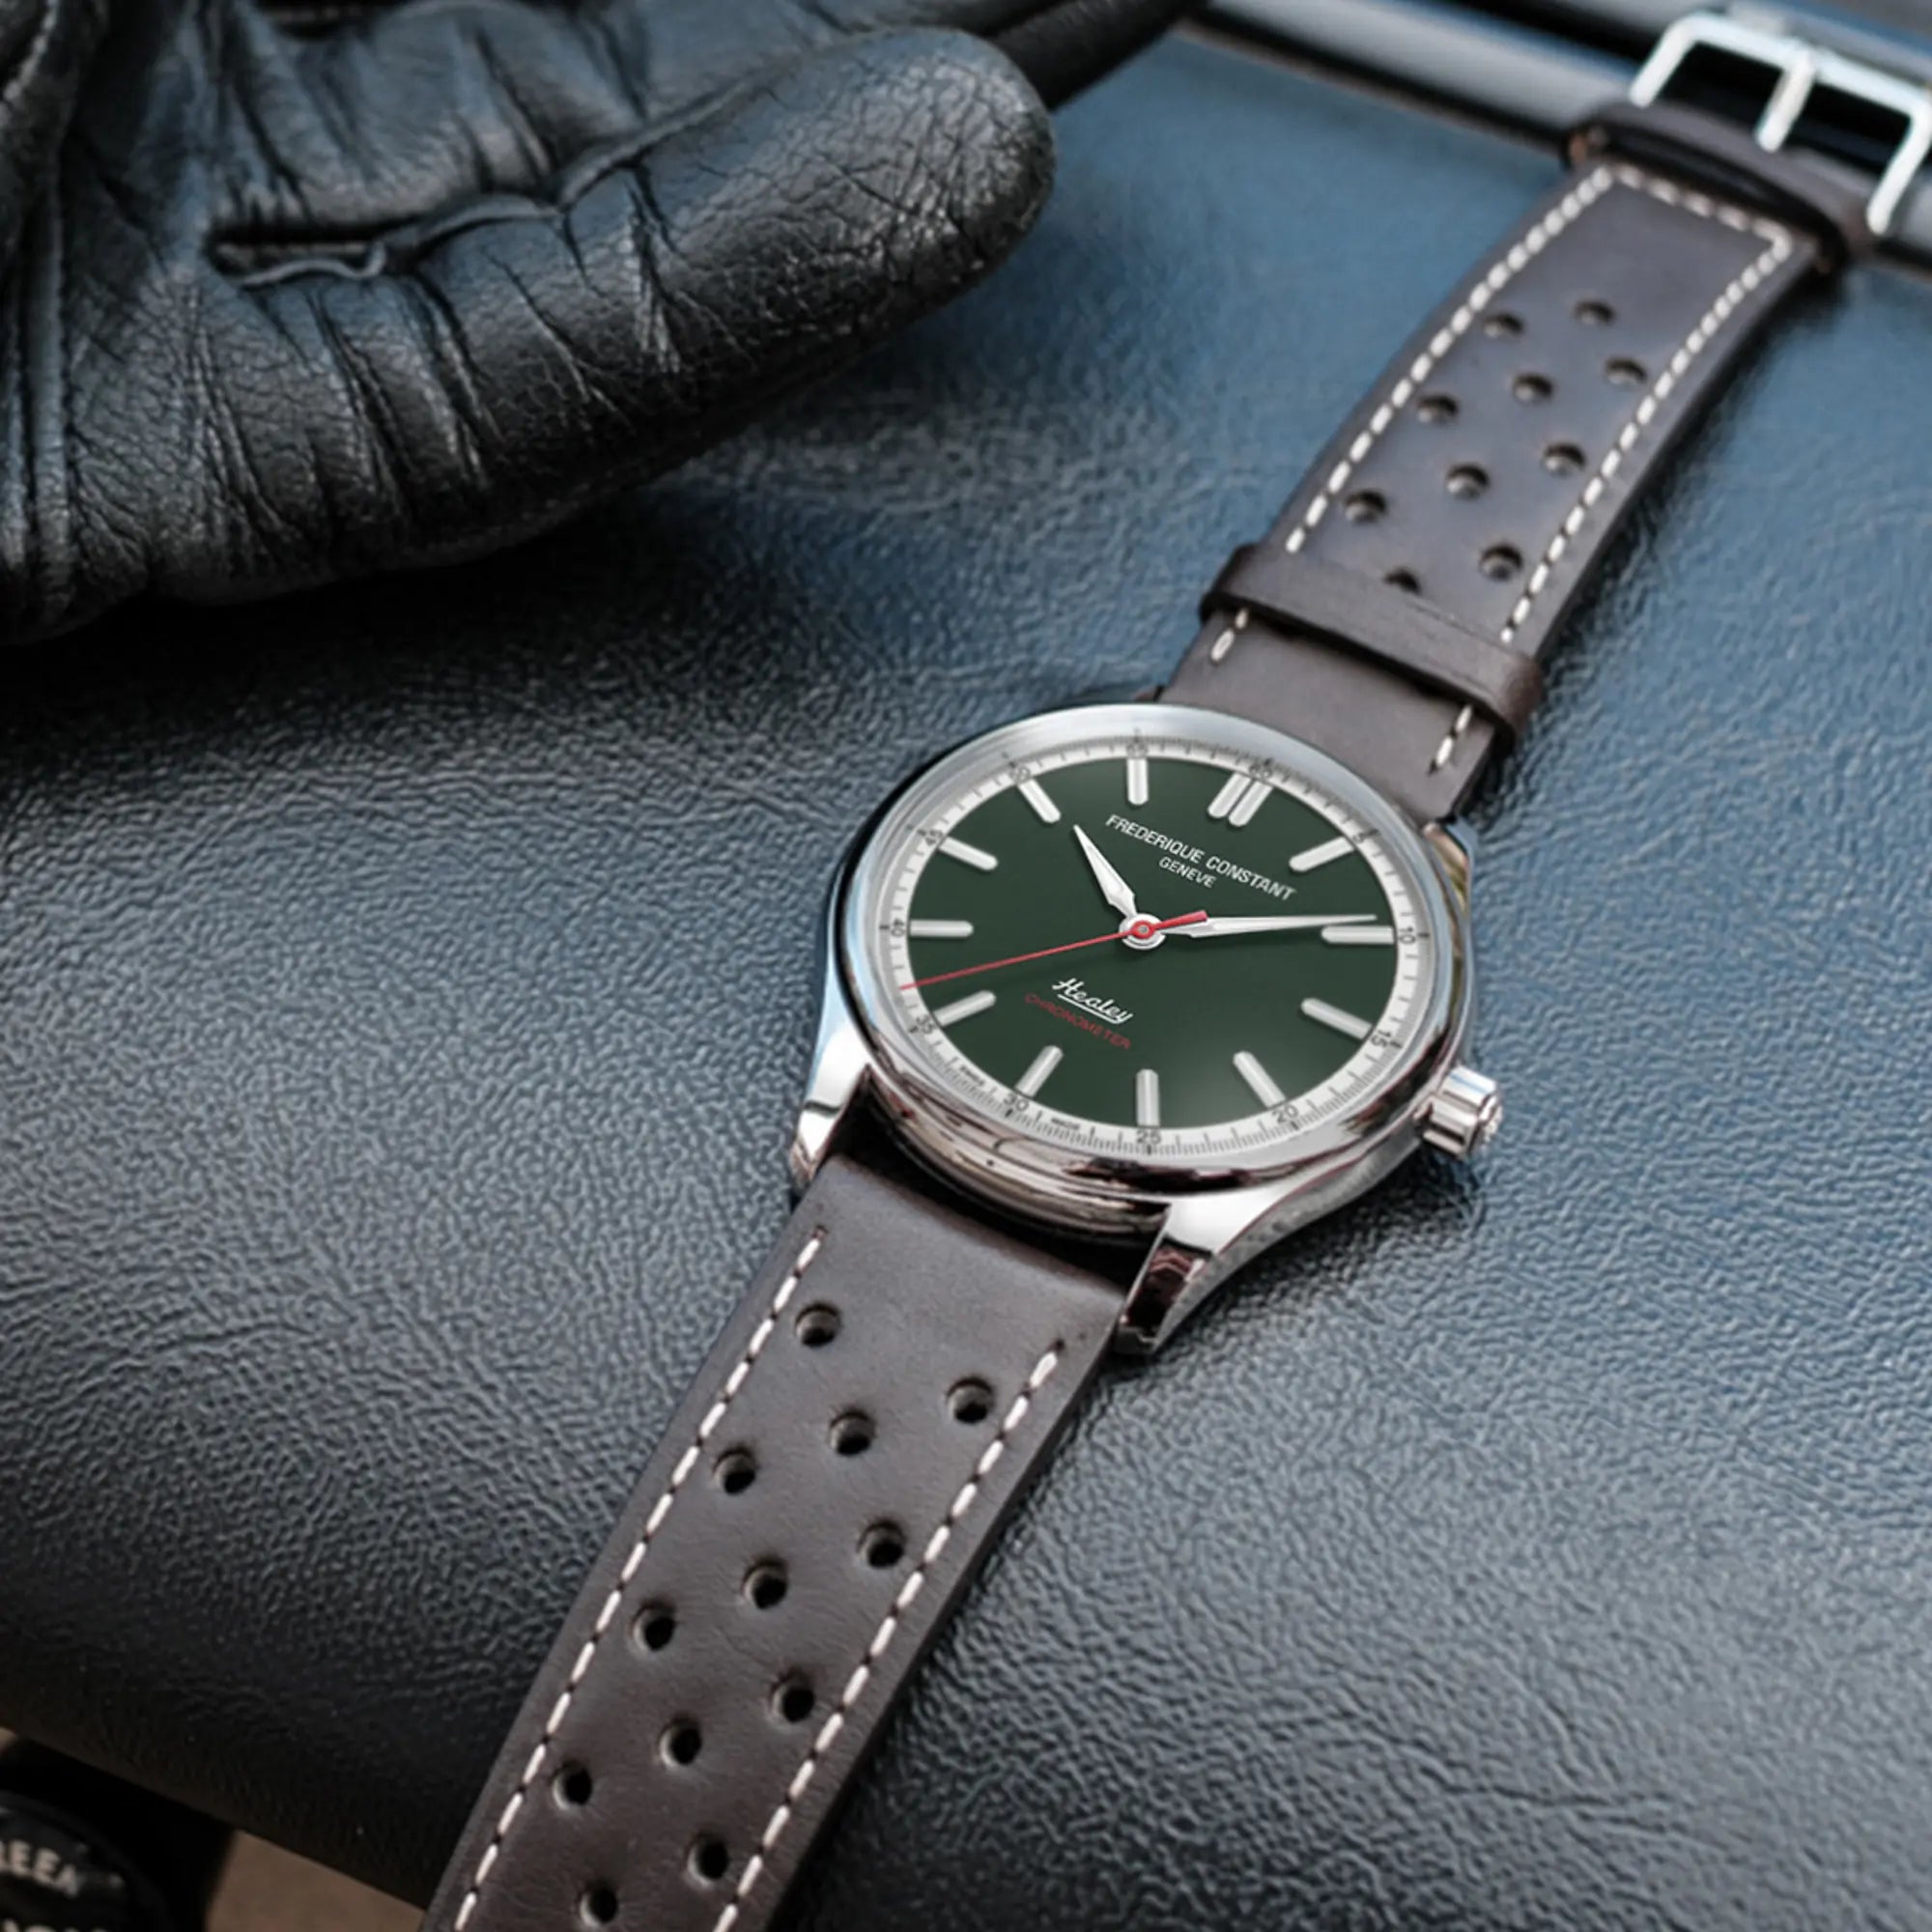 Produktfotografie der "Vintage Rally Healey" Uhr von Frederique Constant aus der Classics Kollektion mit einem dunkelgrünem Zifferblatt und einem braunen Lederarmband im Racing-Look, während die Uhr auf einem schwarzen Leder-Armaturenbrett liegt